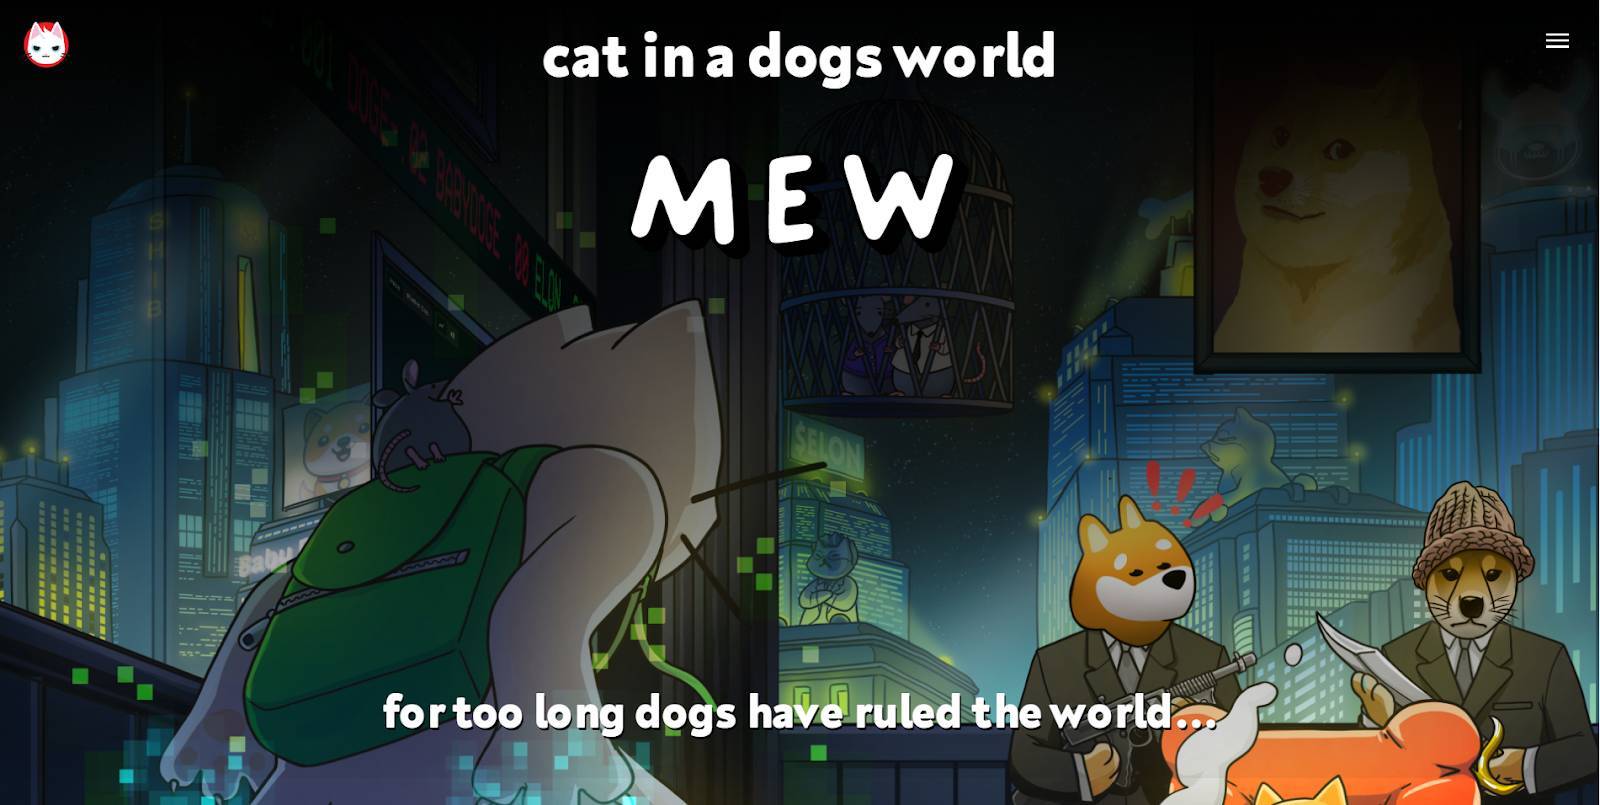 Cat In A Dogs World mew Là Gì Tìm Hiểu Hiểu Về Kẻ Thách Thức đế Chế Memecoin Hệ Chó